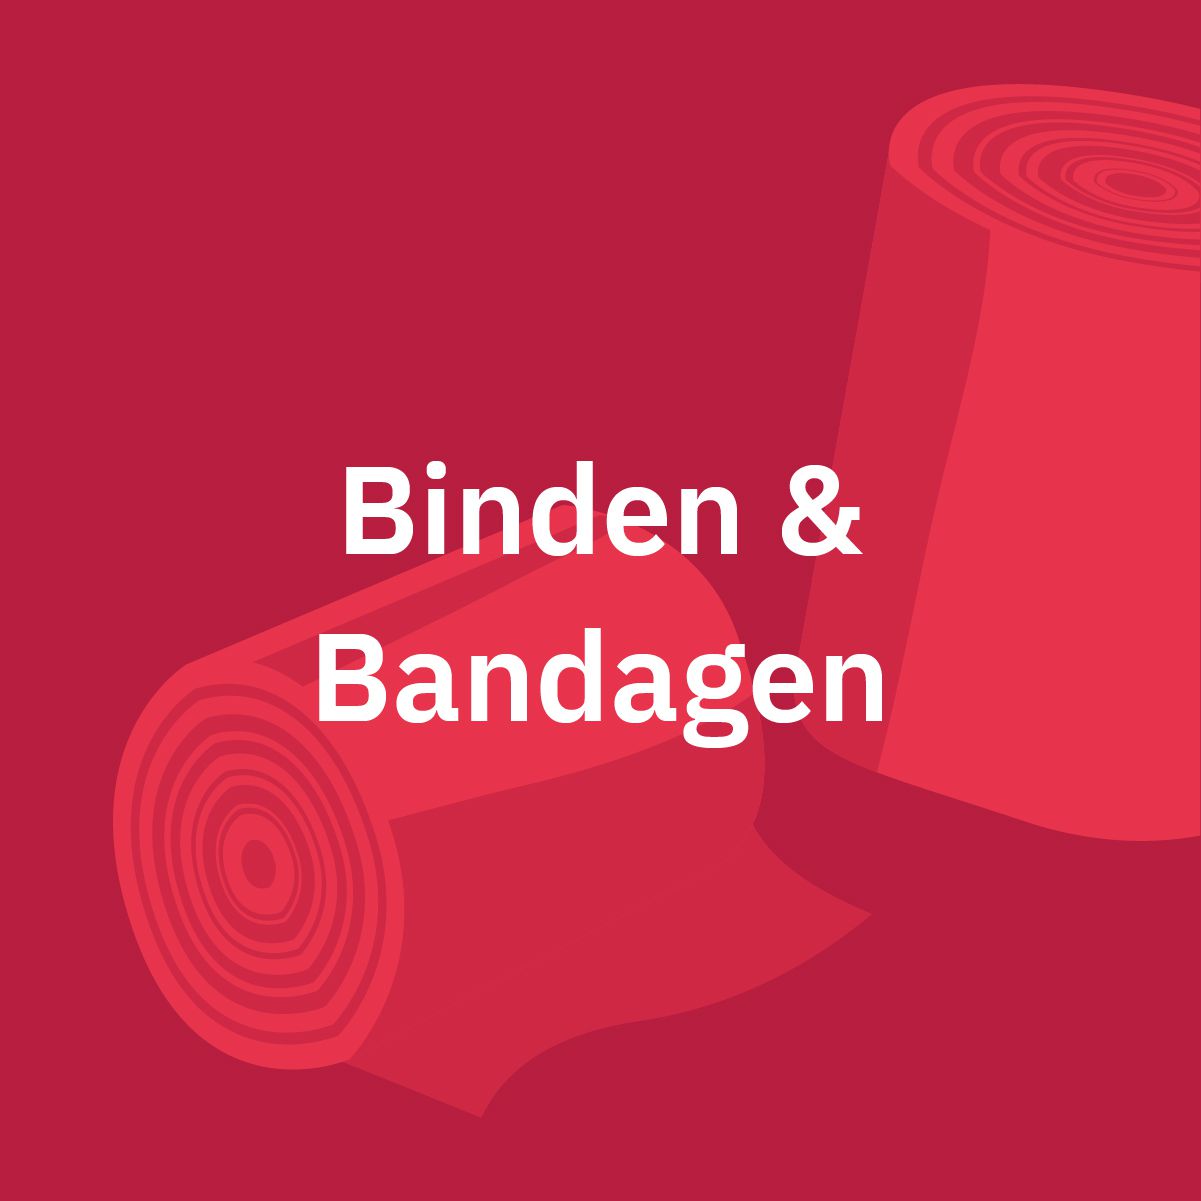 Binden & Bandagen